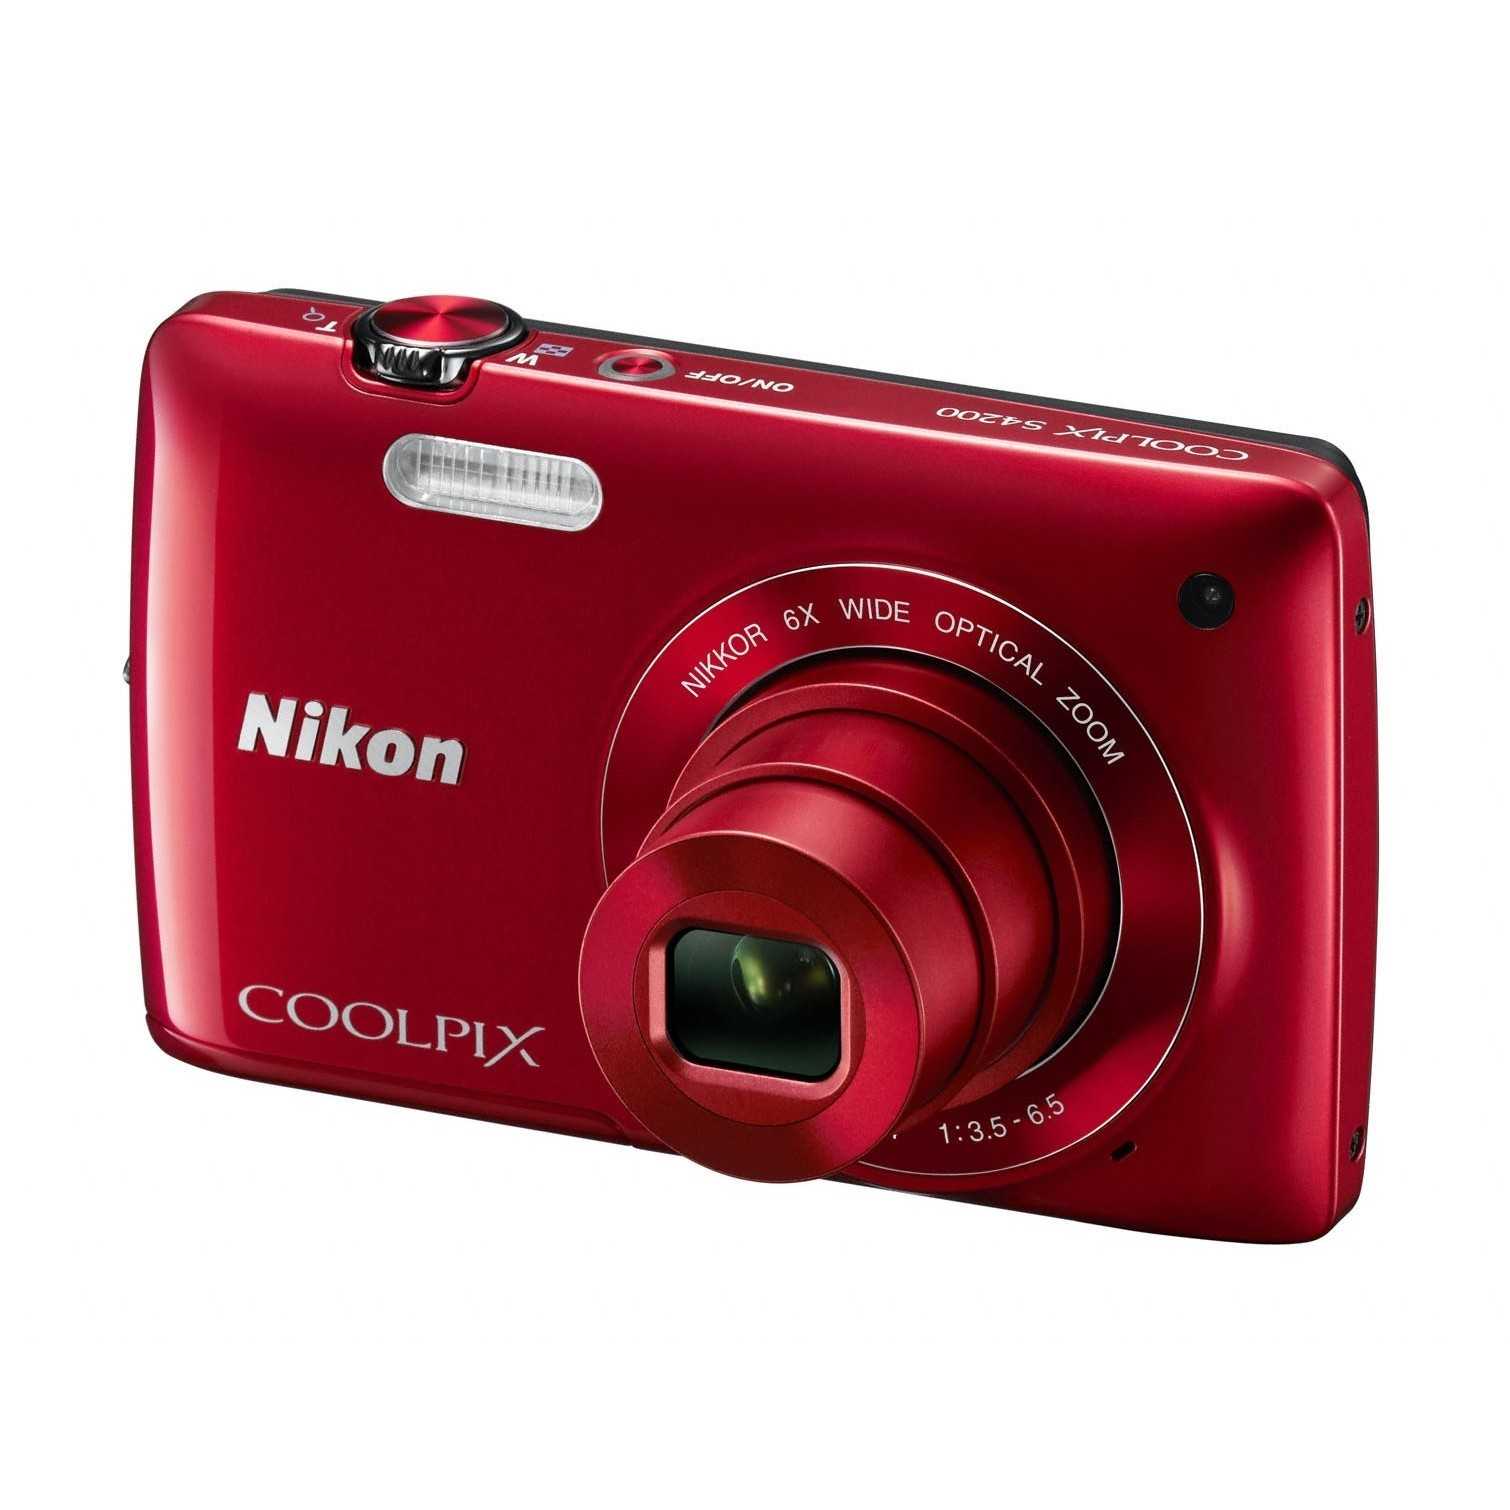 Цифровой фотоаппарат Nikon Coolpix S4300 - подробные характеристики обзоры видео фото Цены в интернет-магазинах где можно купить цифровую фотоаппарат Nikon Coolpix S4300